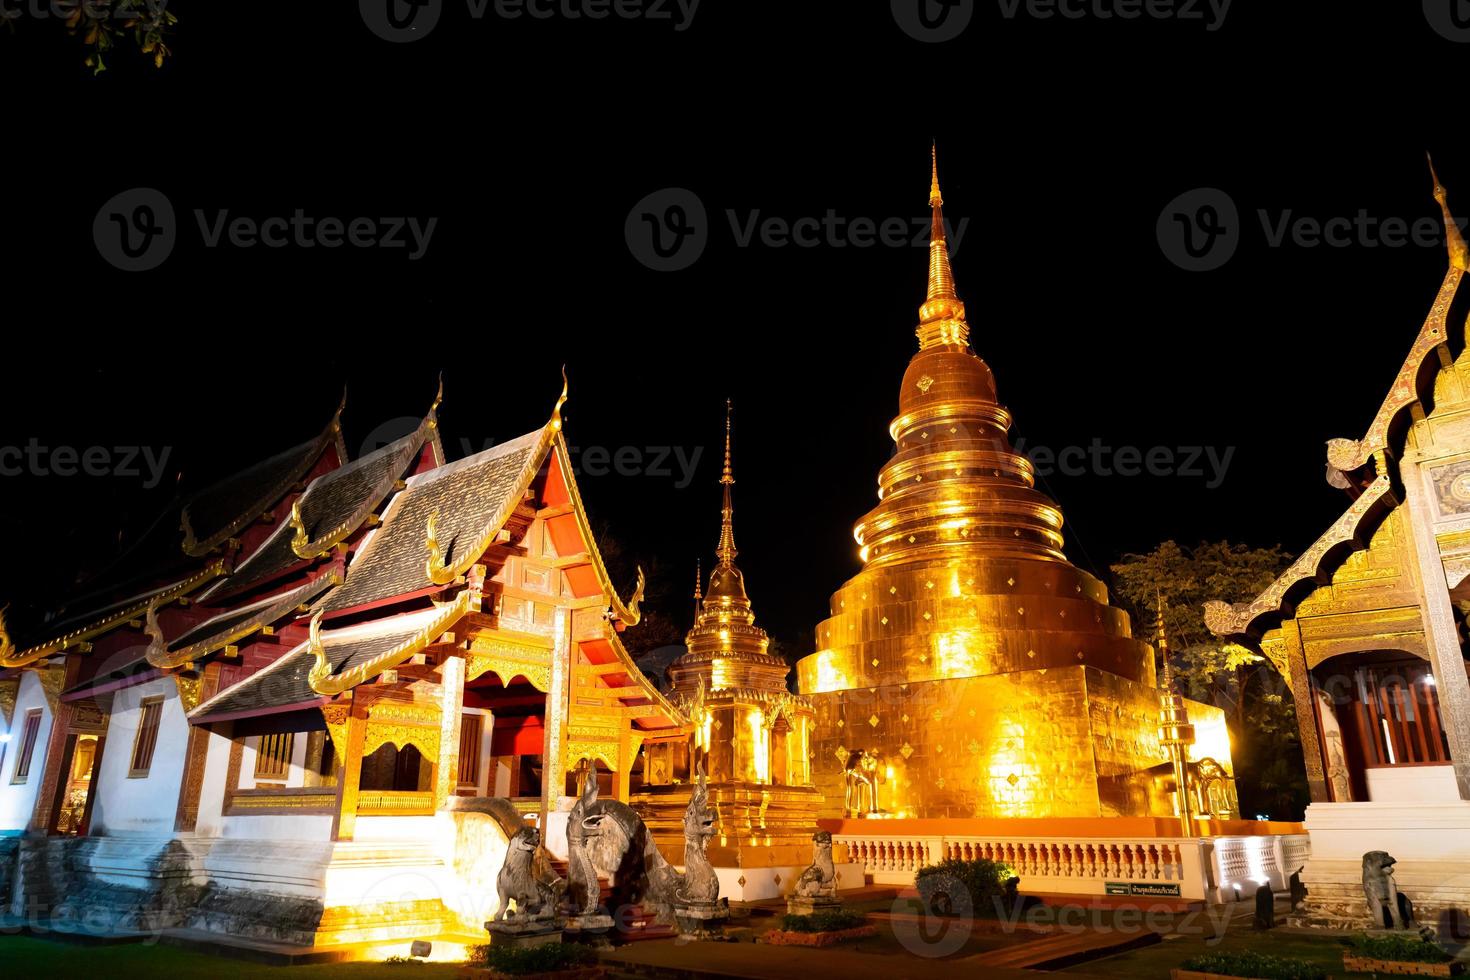 bela arquitetura no templo wat phra sing waramahavihan à noite na província de chiang mai, tailândia foto